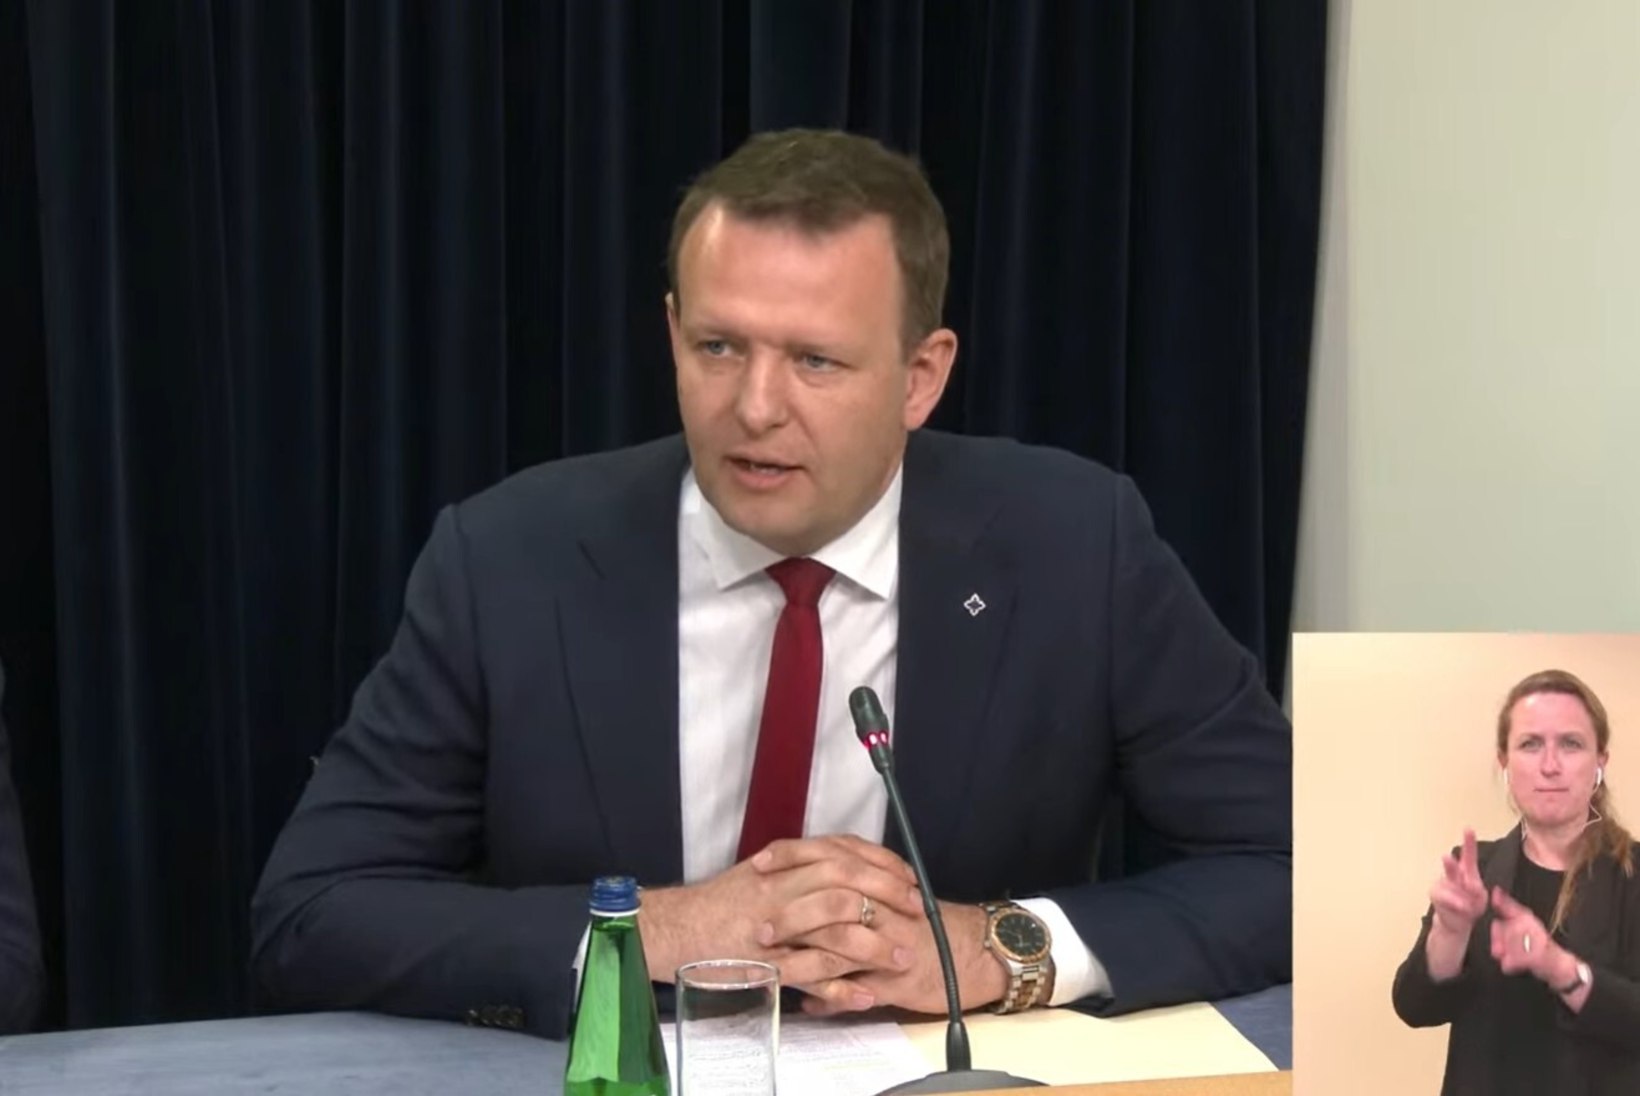 VIDEO | Kaja Kallas: aus oleks, kui EKRE liikmed ütleksid, et nemad eksisid, mitte mina